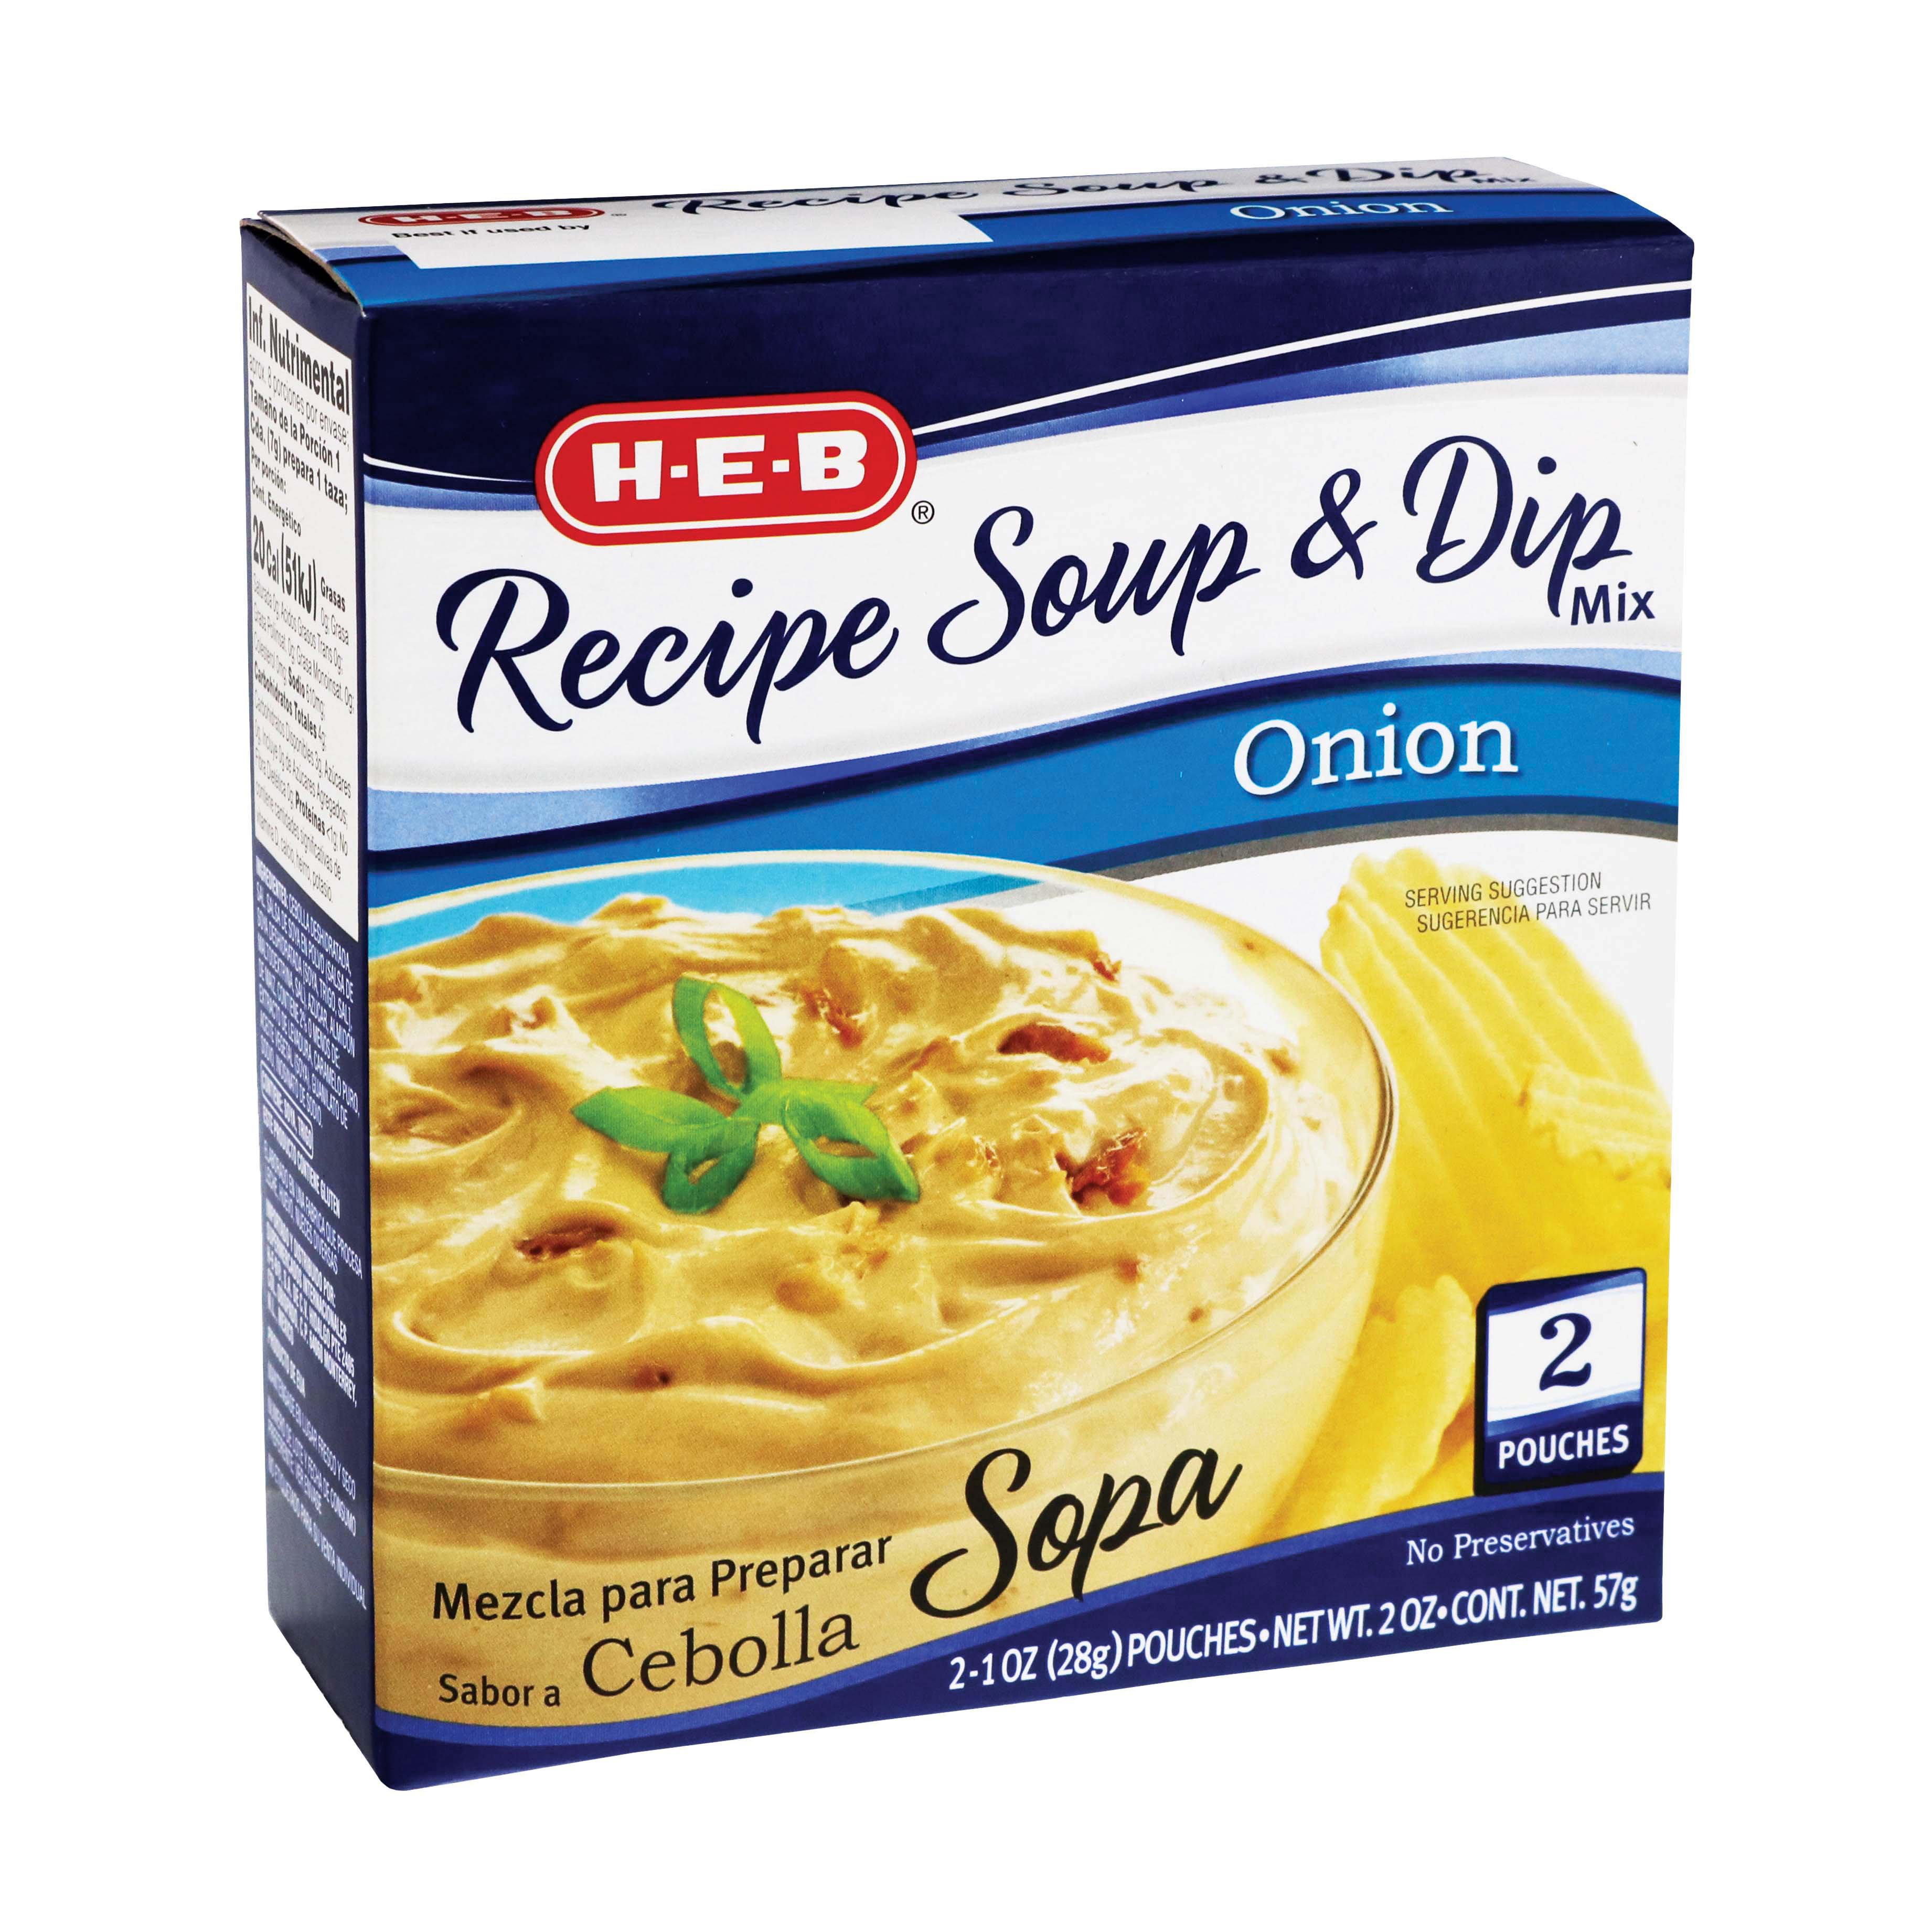 H-E-B Onion Recipe Soup and Dip Mix - Shop Soups & Chili at H-E-B